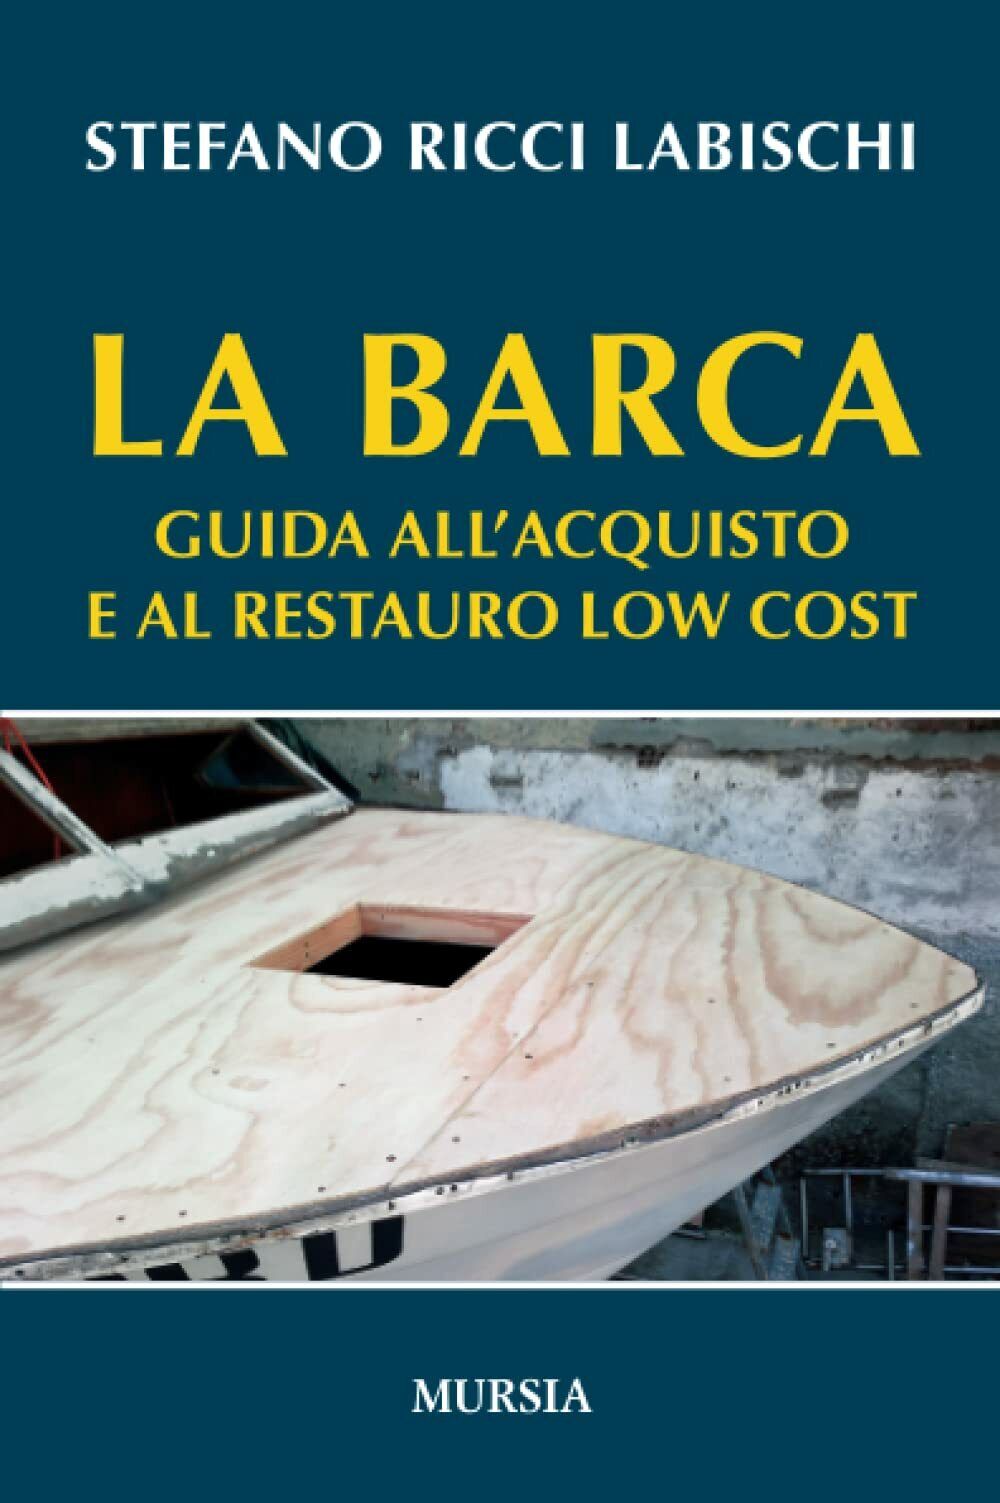 La barca: Guida alL'acquisto e al restauro low cost -Stefano Ricci Labischi-2017